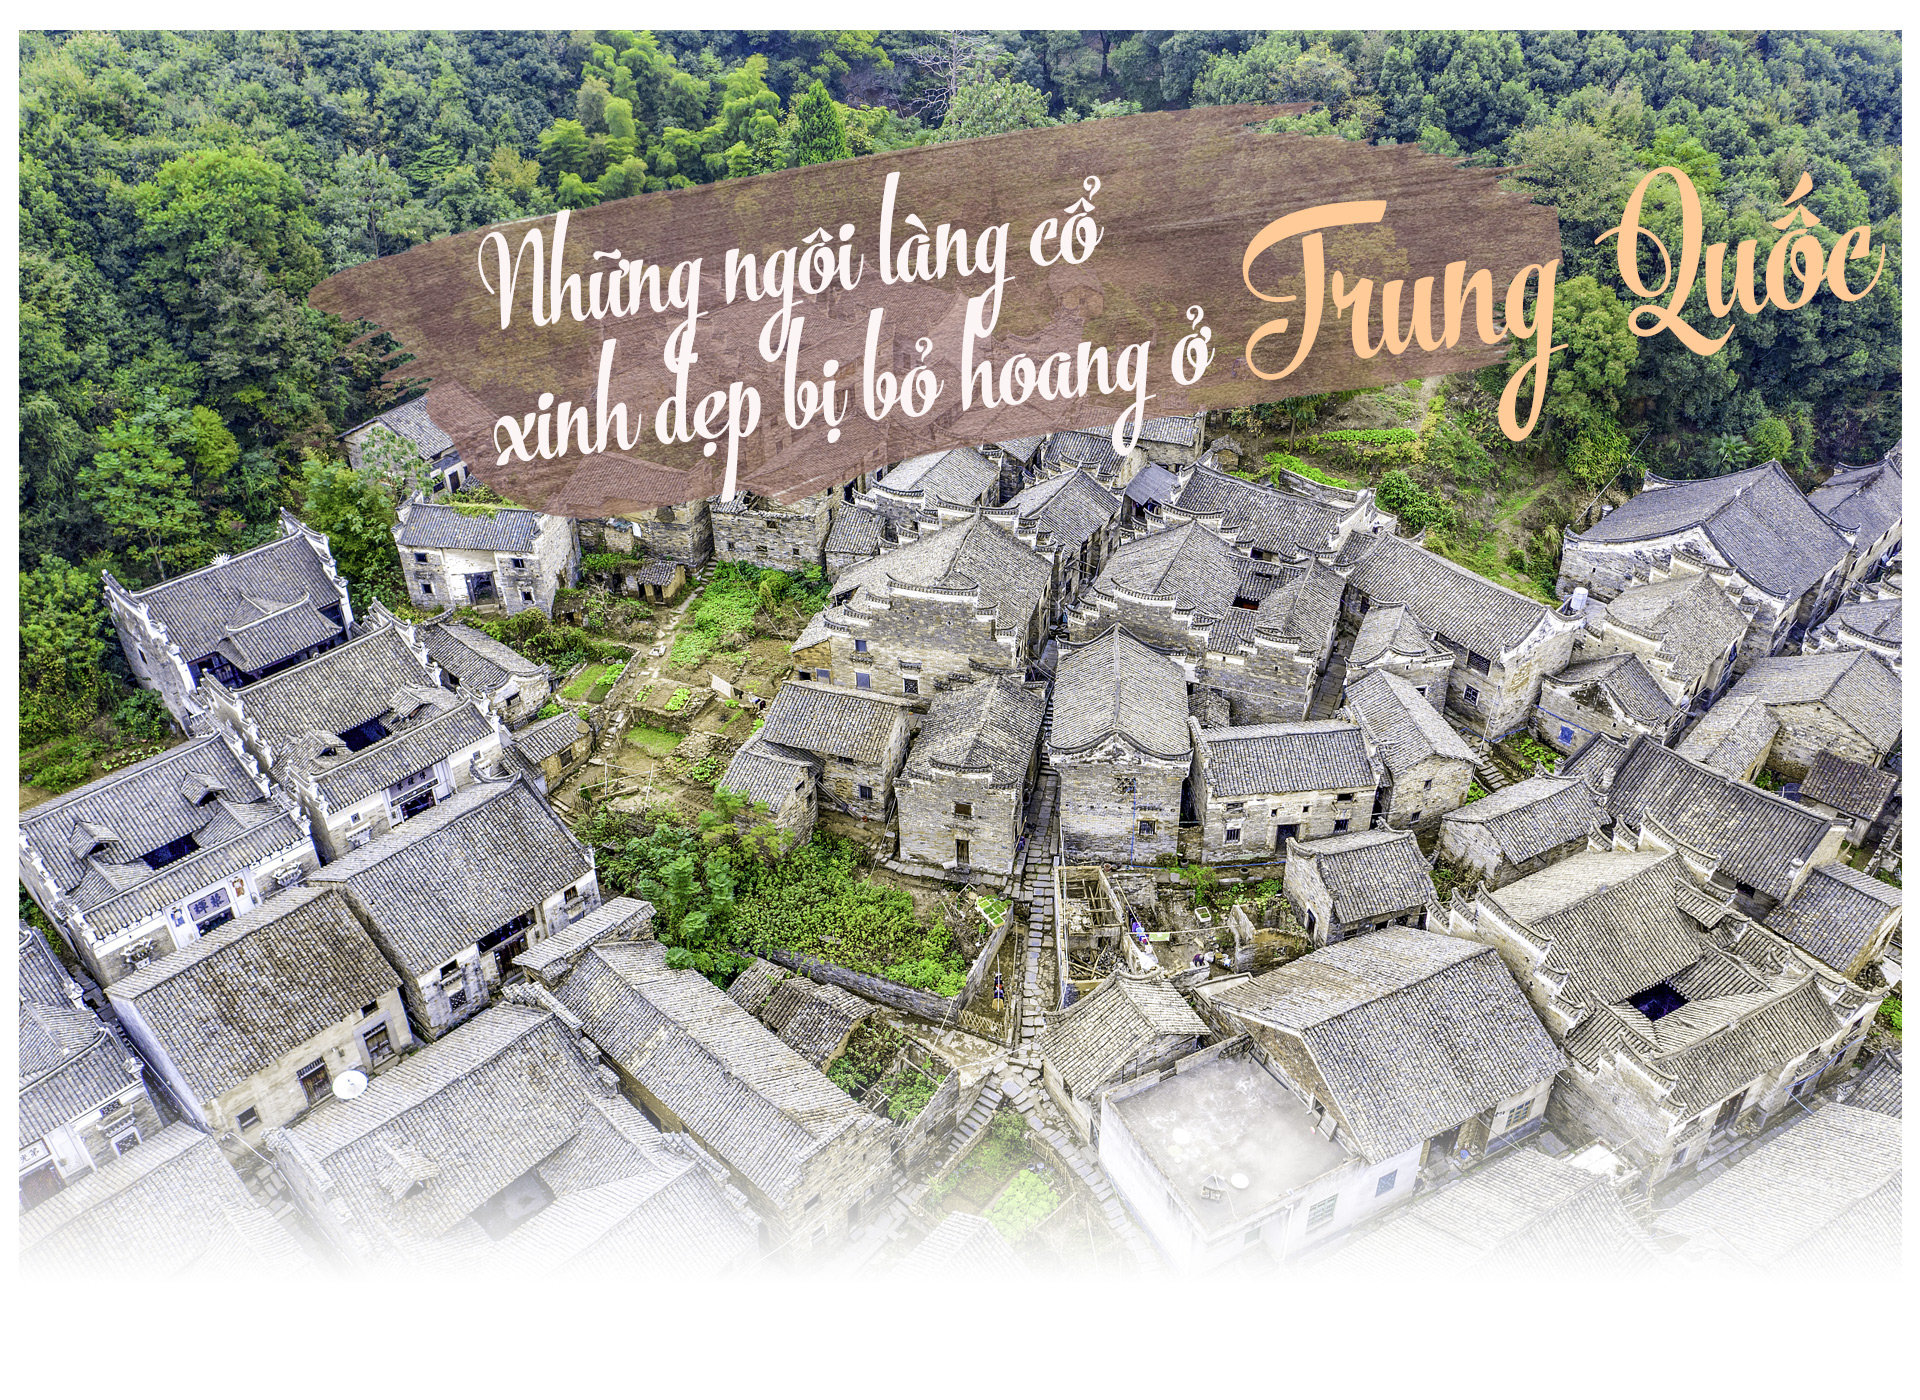 Ám ảnh những ngôi làng cổ xinh đẹp bị bỏ hoang ở Trung Quốc - 1